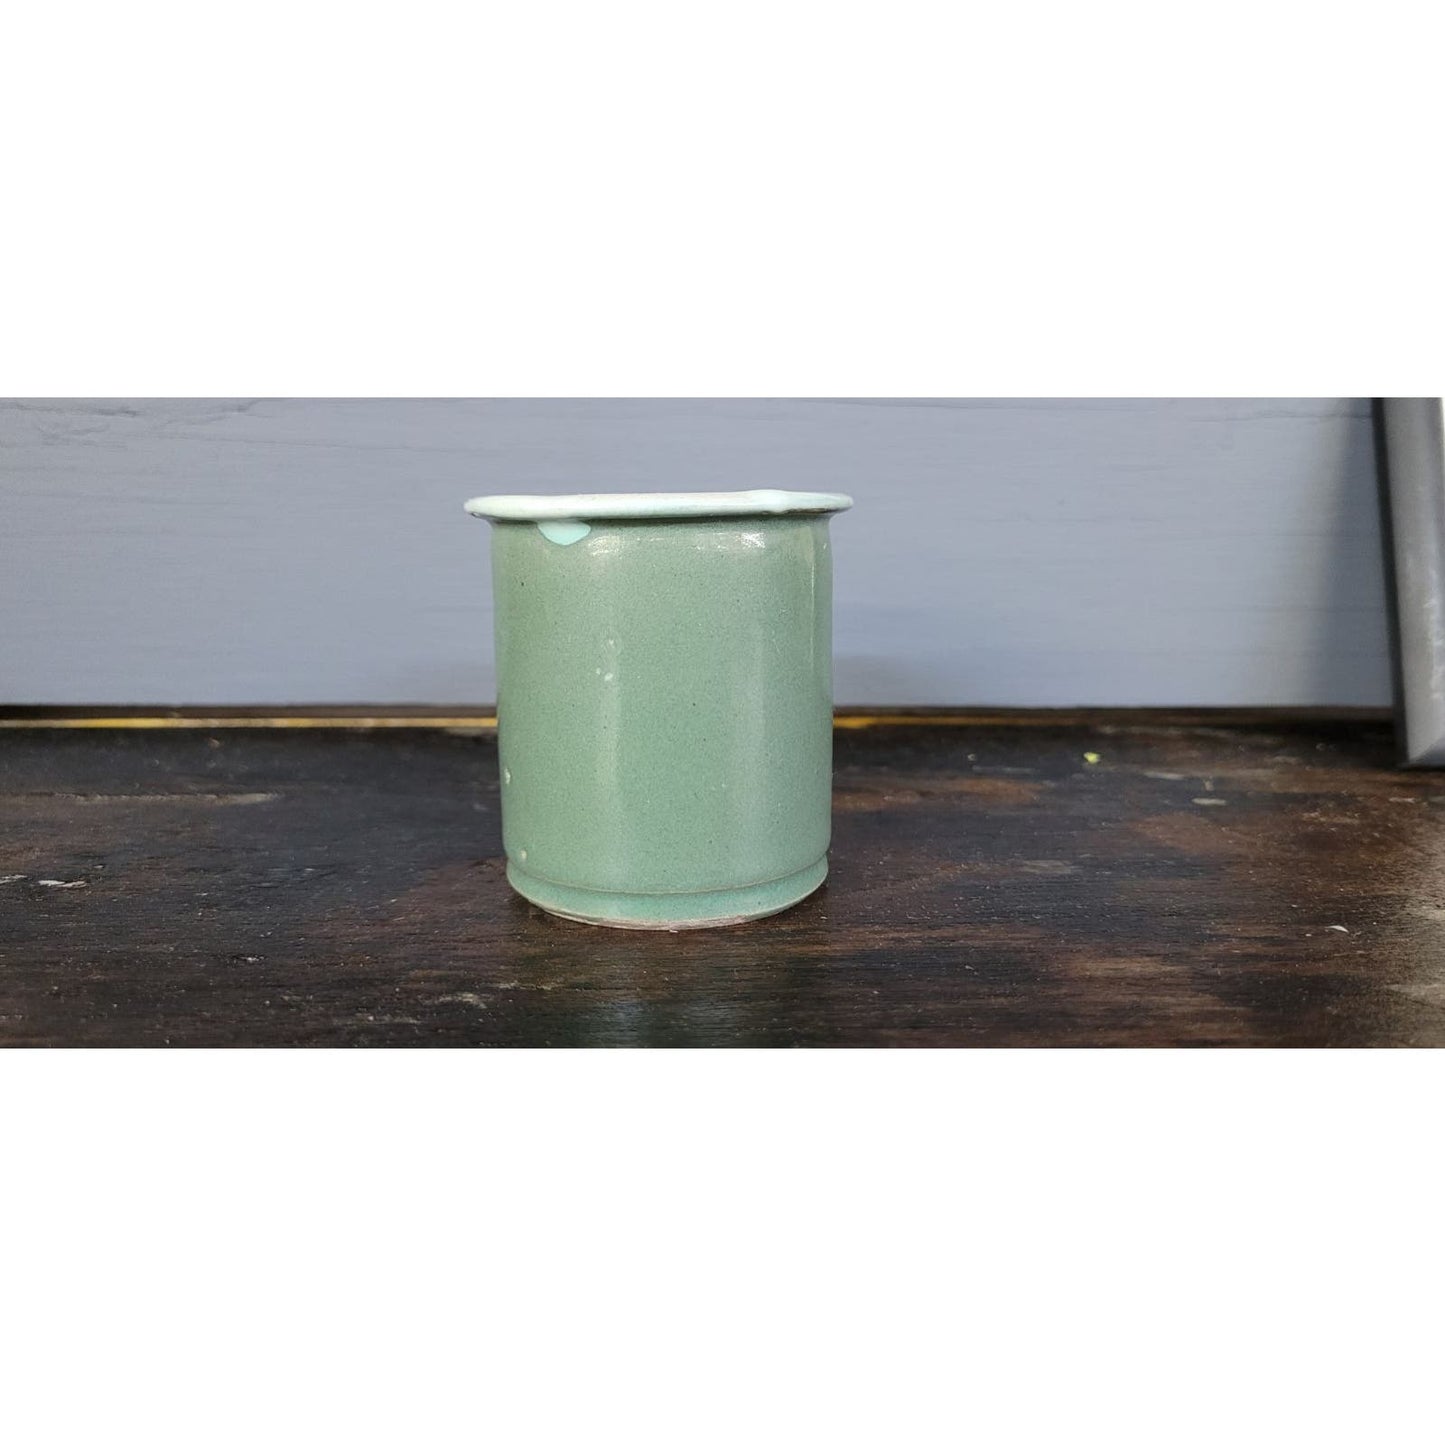 Antique 1800s Ceramic Cream Pot Green